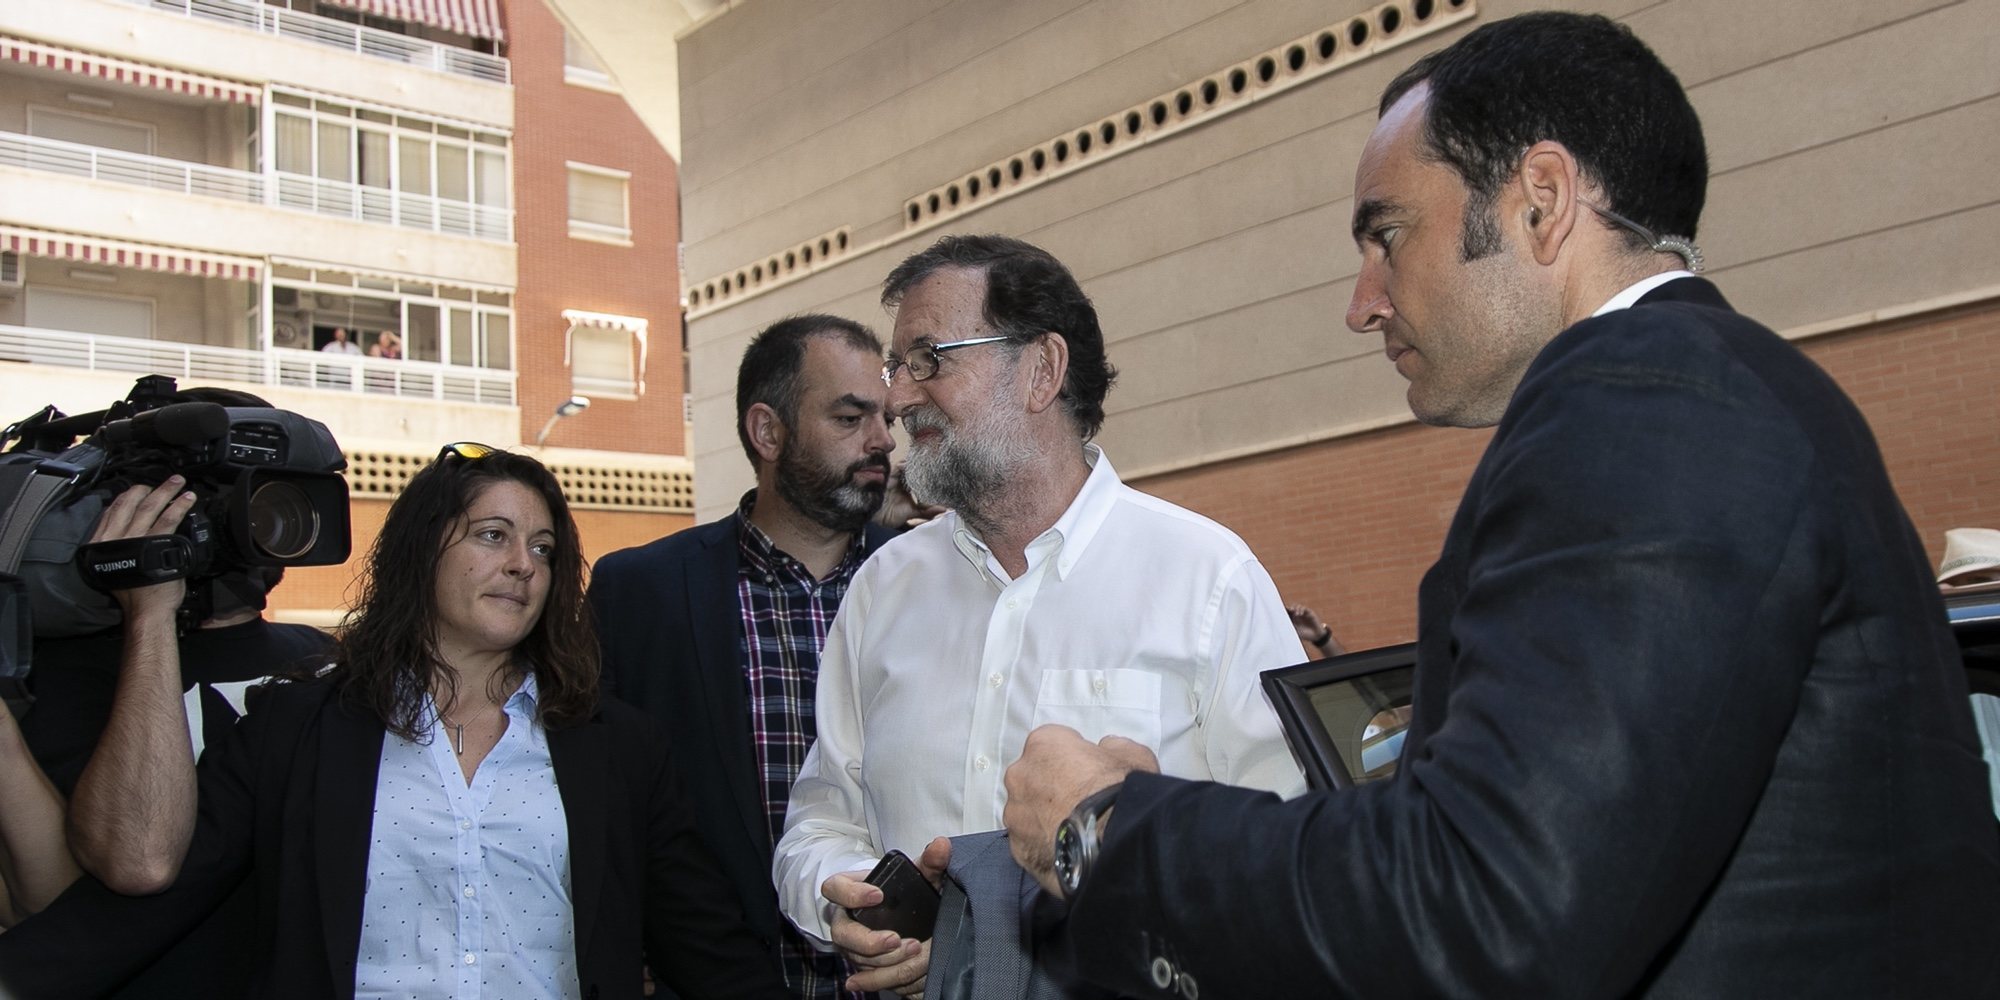 La nueva vida de Mariano Rajoy como registrador de la propiedad en Santa Pola: "Vuelvo donde estaba"